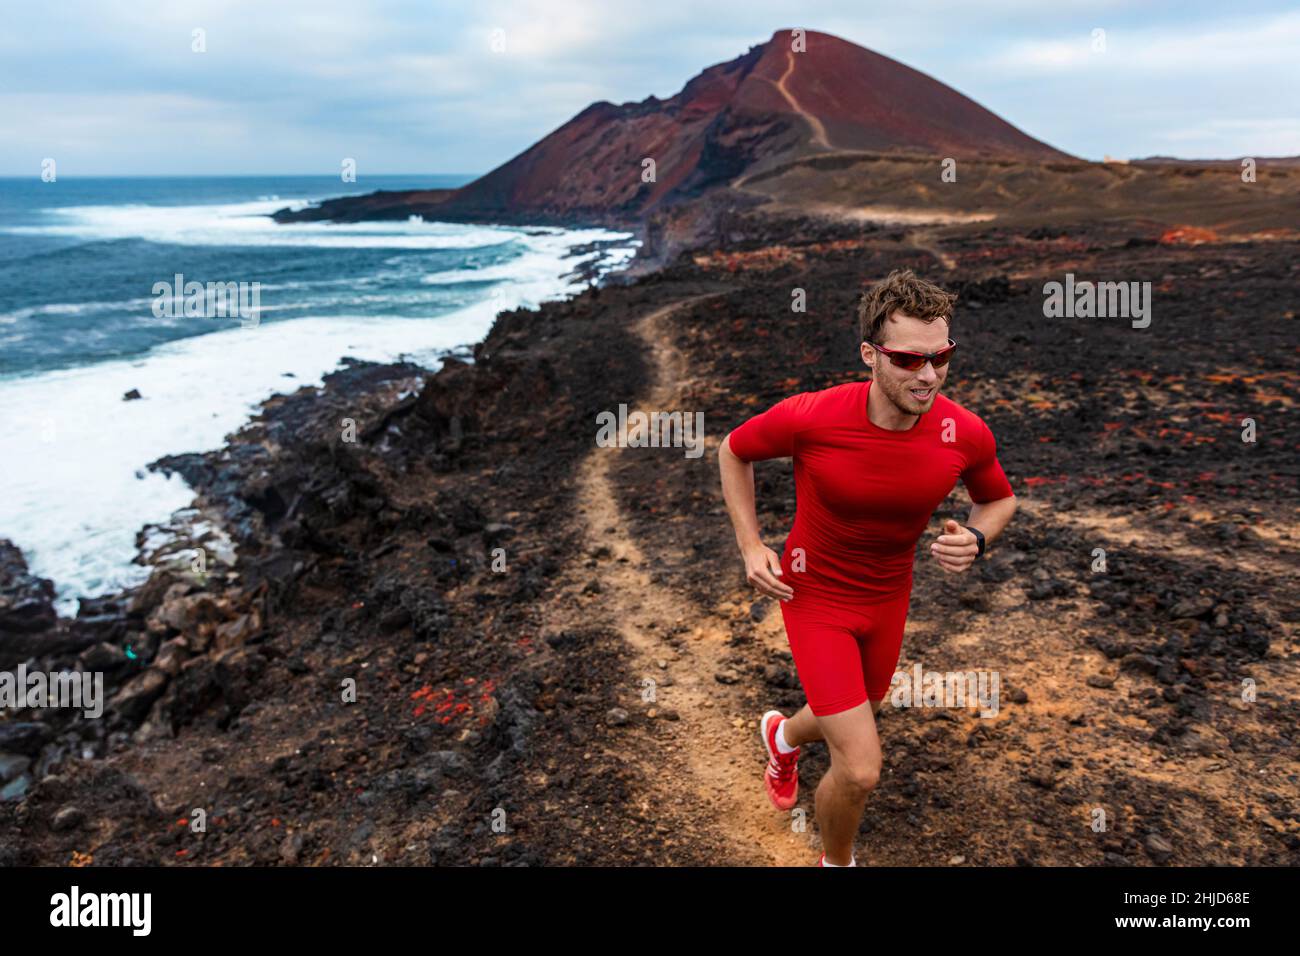 Läufer Mann Sport Athlet Ultra Laufen auf Ausdauer Trail Rennen Wettkampftraining auf Vulkanklippe tragen Kompressionskleidung, Sonnenbrille Stockfoto